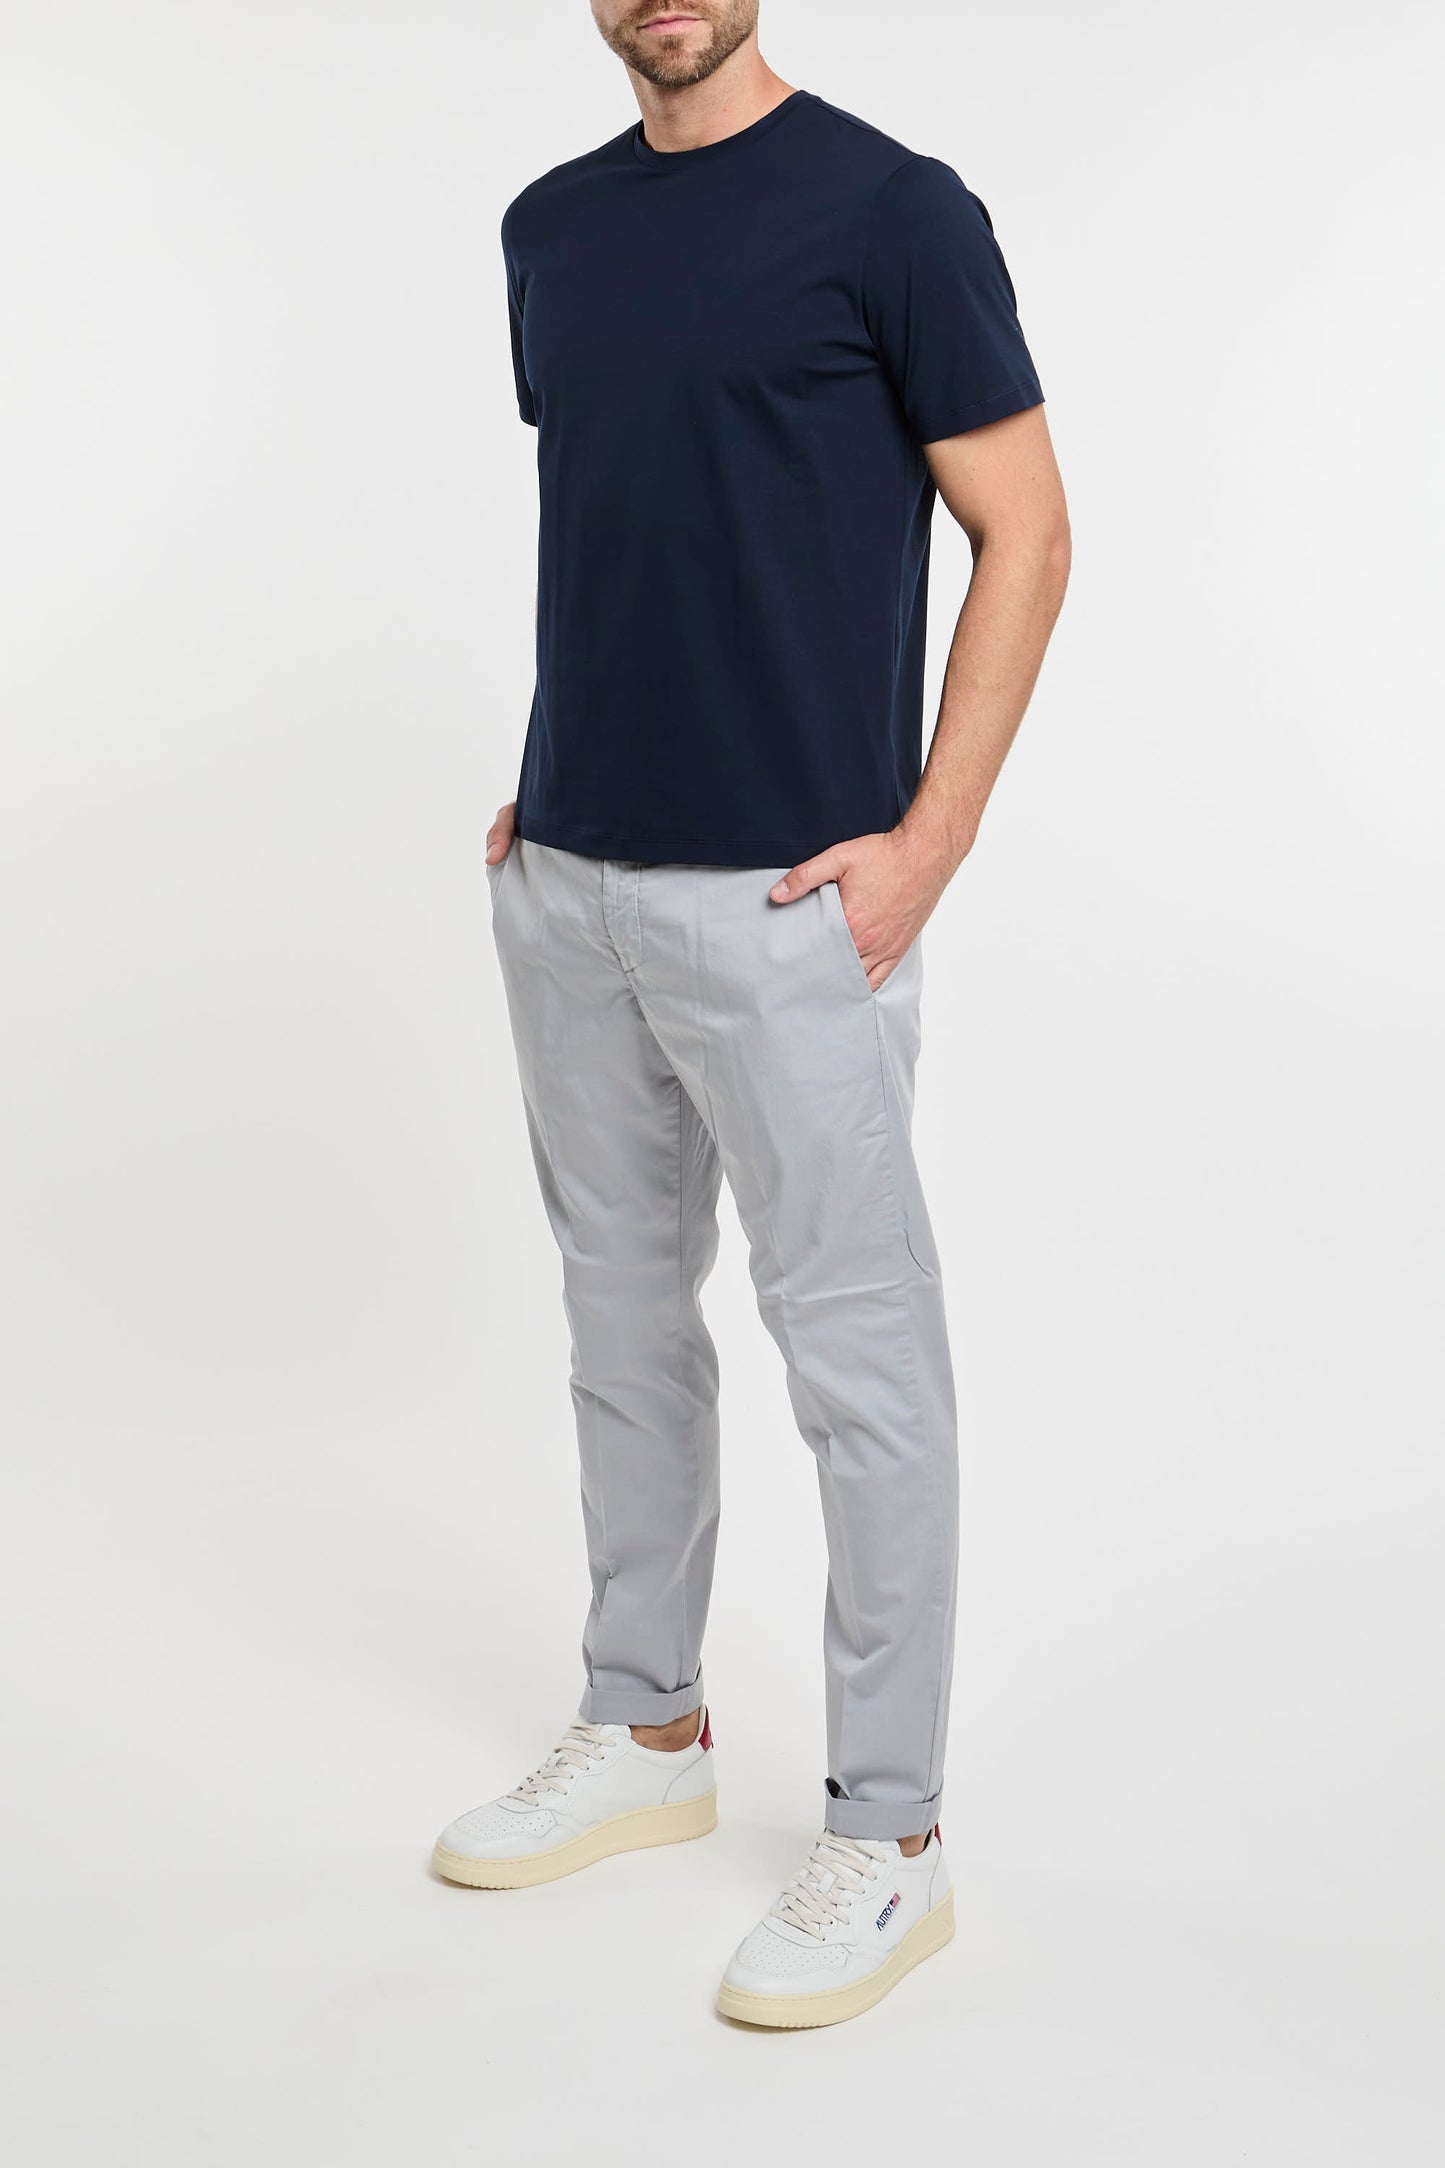  Herno T-shirt 92% Cotone 8% Elastan Blu Blu Uomo - 1